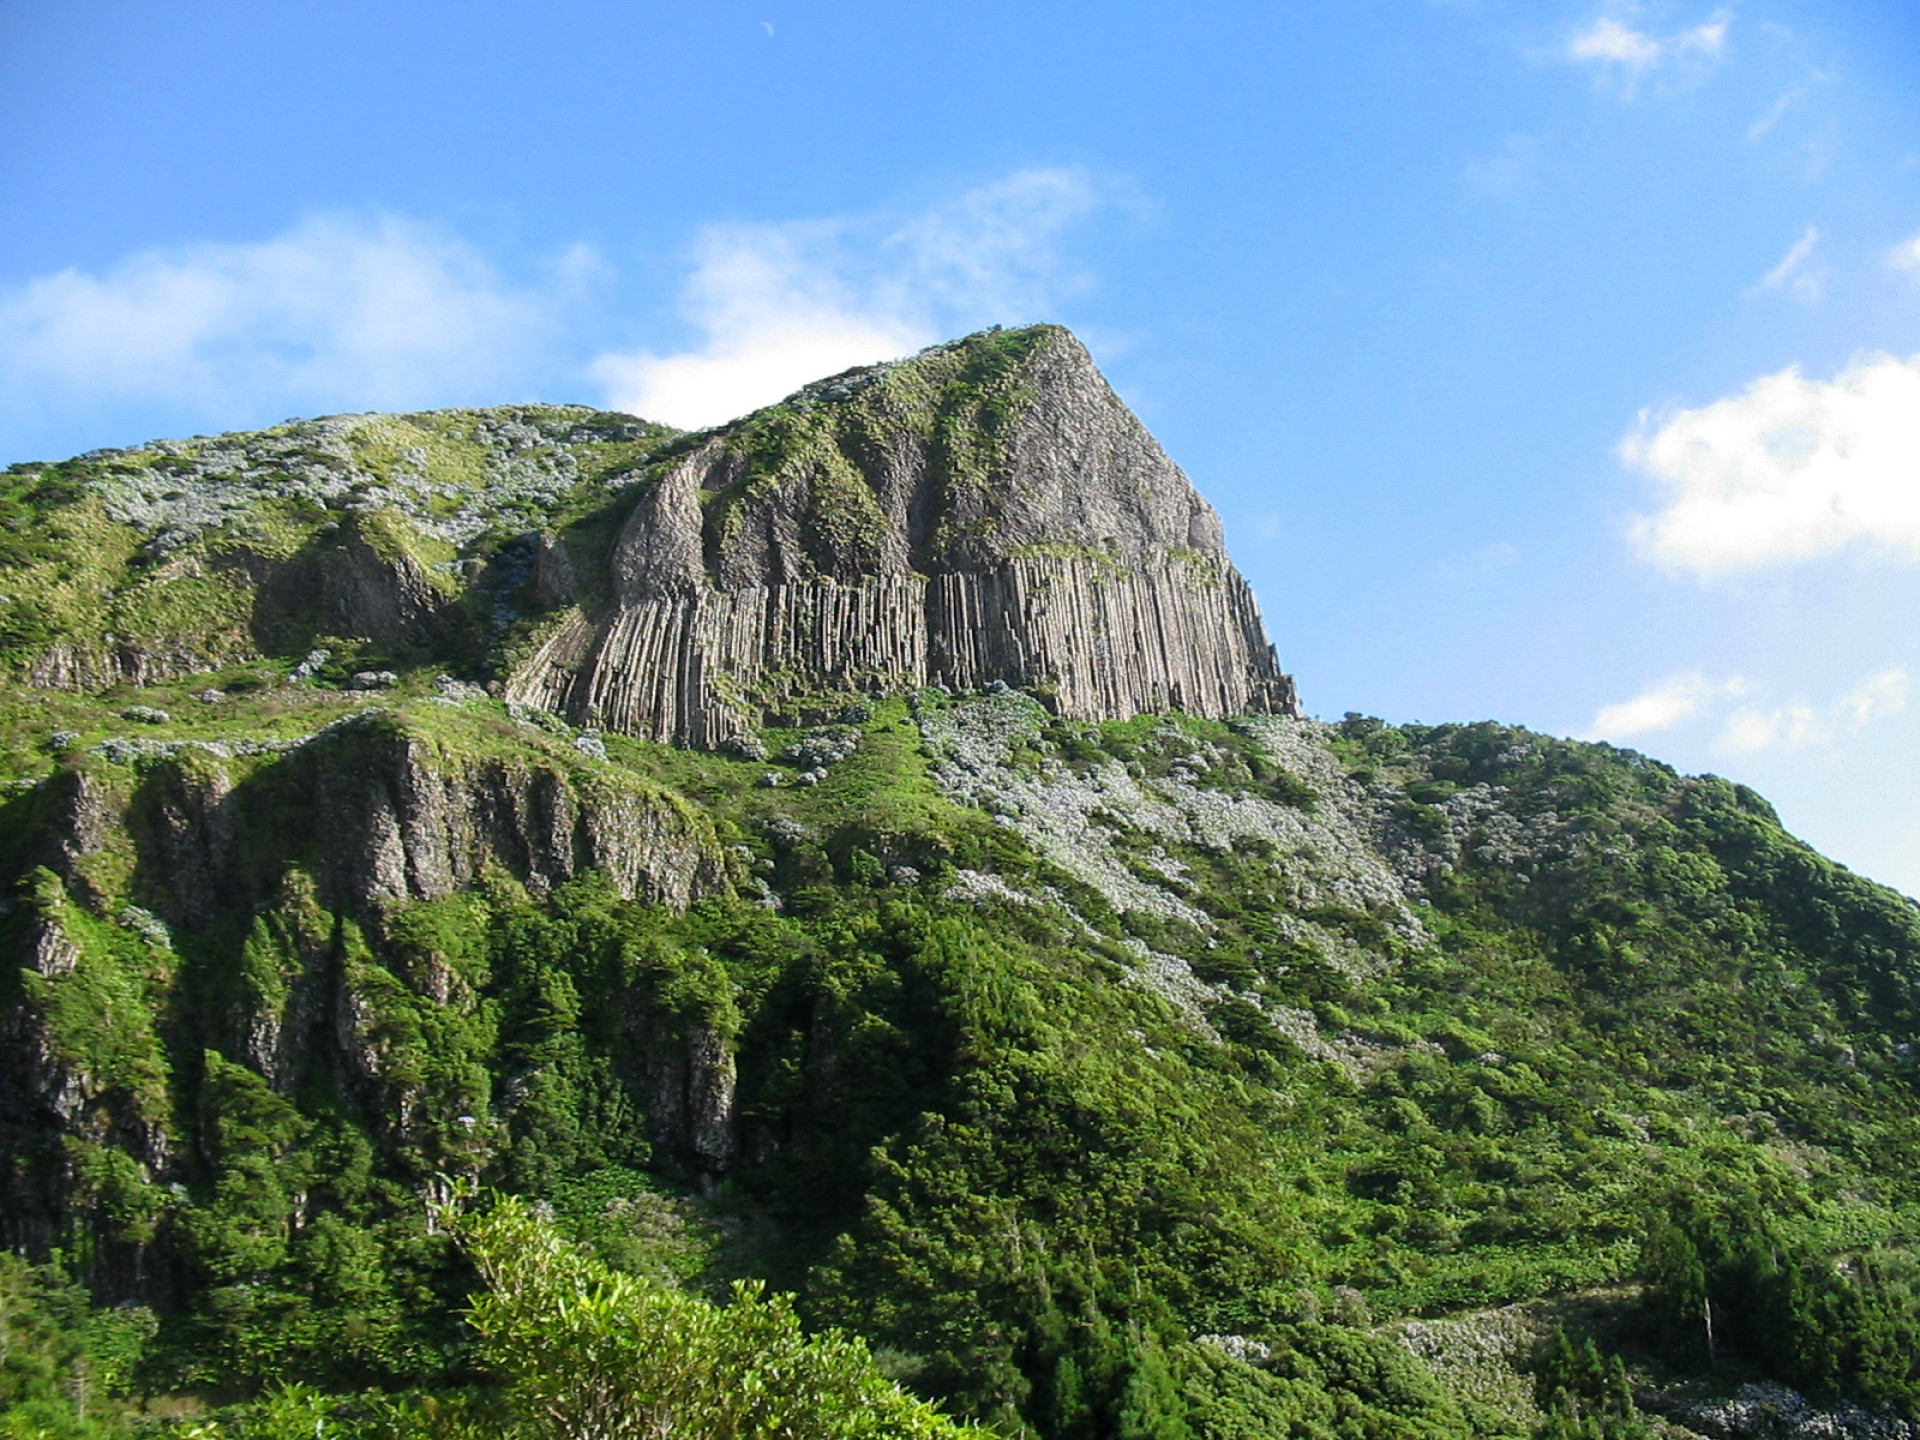 L'une des plus belles merveilles de l'île est la Rocha dos Bordões. Il s'agit d'une énorme excroissance verticale de basalte qui ressemble à une roche préhistorique. <p><a href="https://www.msn.com/fr-fr/community/channel/vid-7xx8mnucu55yw63we9va2gwr7uihbxwc68fxqp25x6tg4ftibpra?cvid=94631541bc0f4f89bfd59158d696ad7e">Suivez-nous et accédez tous les jours à du contenu exclusif</a></p>